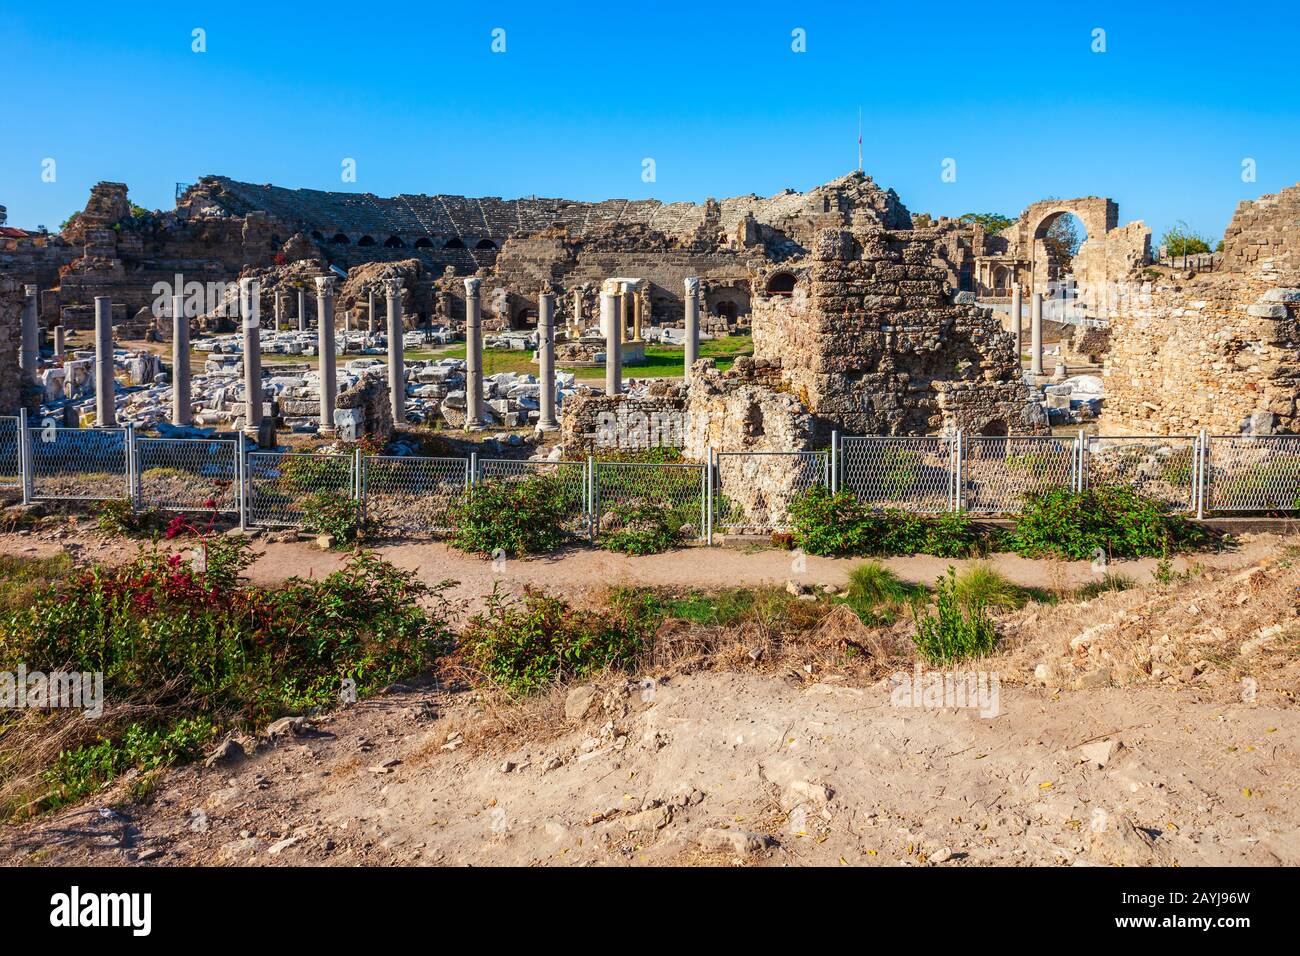 L'ancienne ville De Side dans la région d'Antalya sur la côte méditerranéenne de la Turquie. Banque D'Images